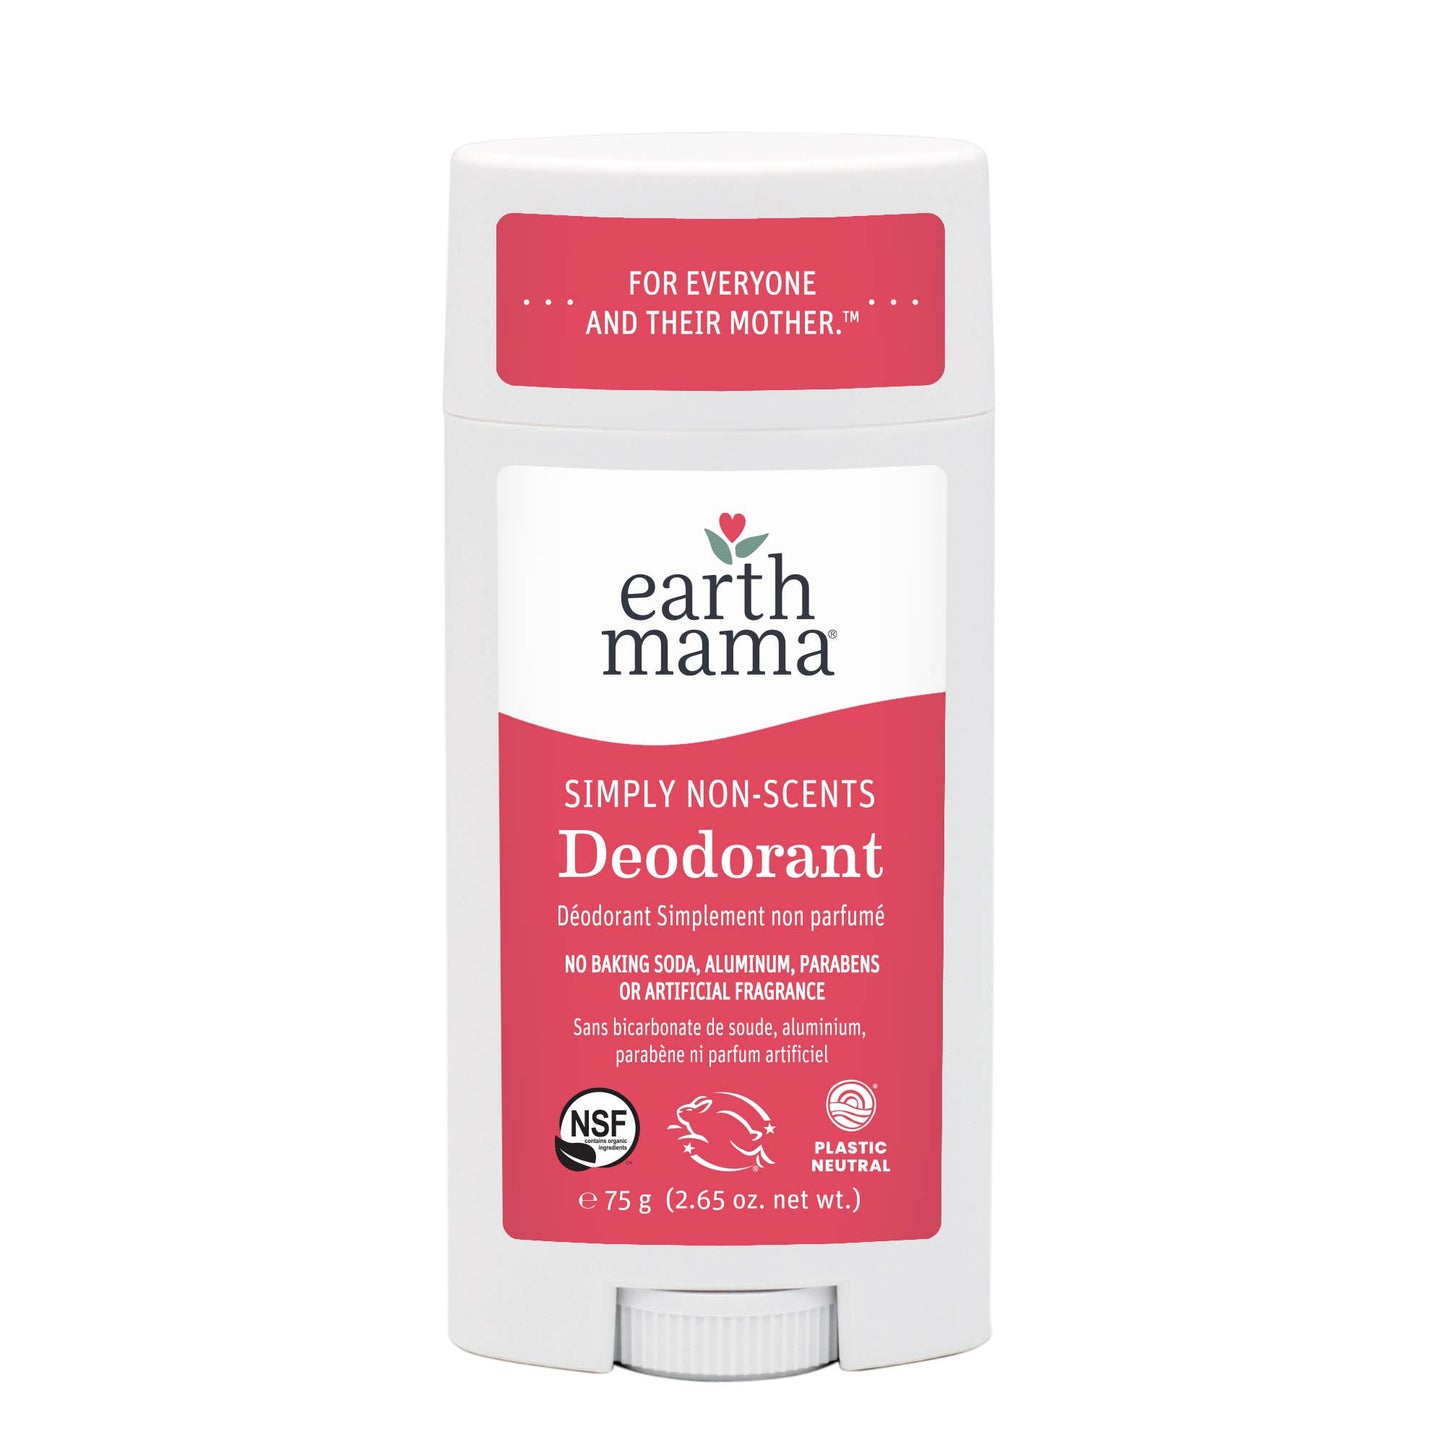 Simply Non-Scents Deodorant